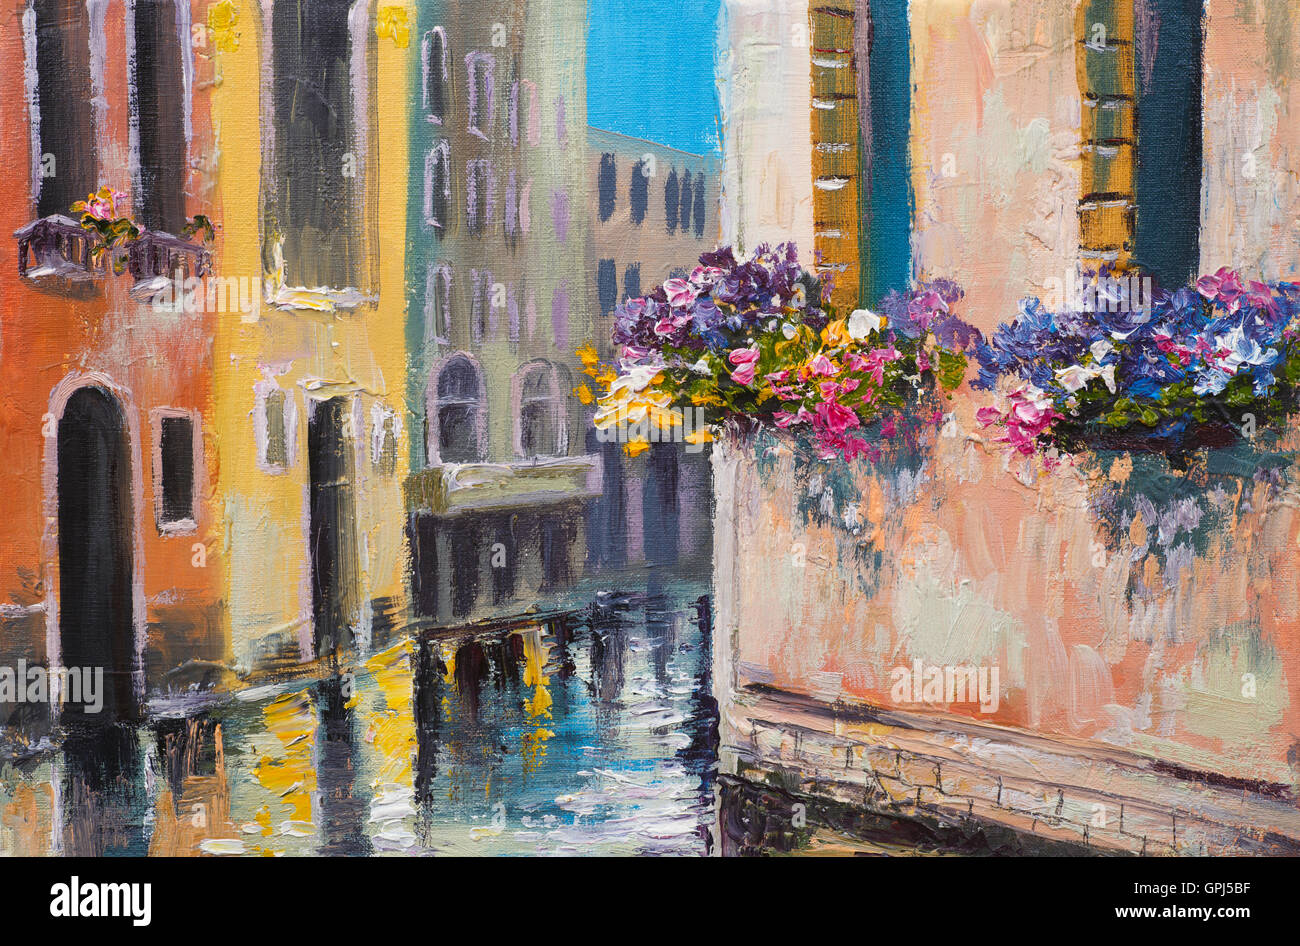 Peinture à l'huile, canal in Venice, Italie, célèbre lieu touristique, l'impressionnisme coloré Banque D'Images